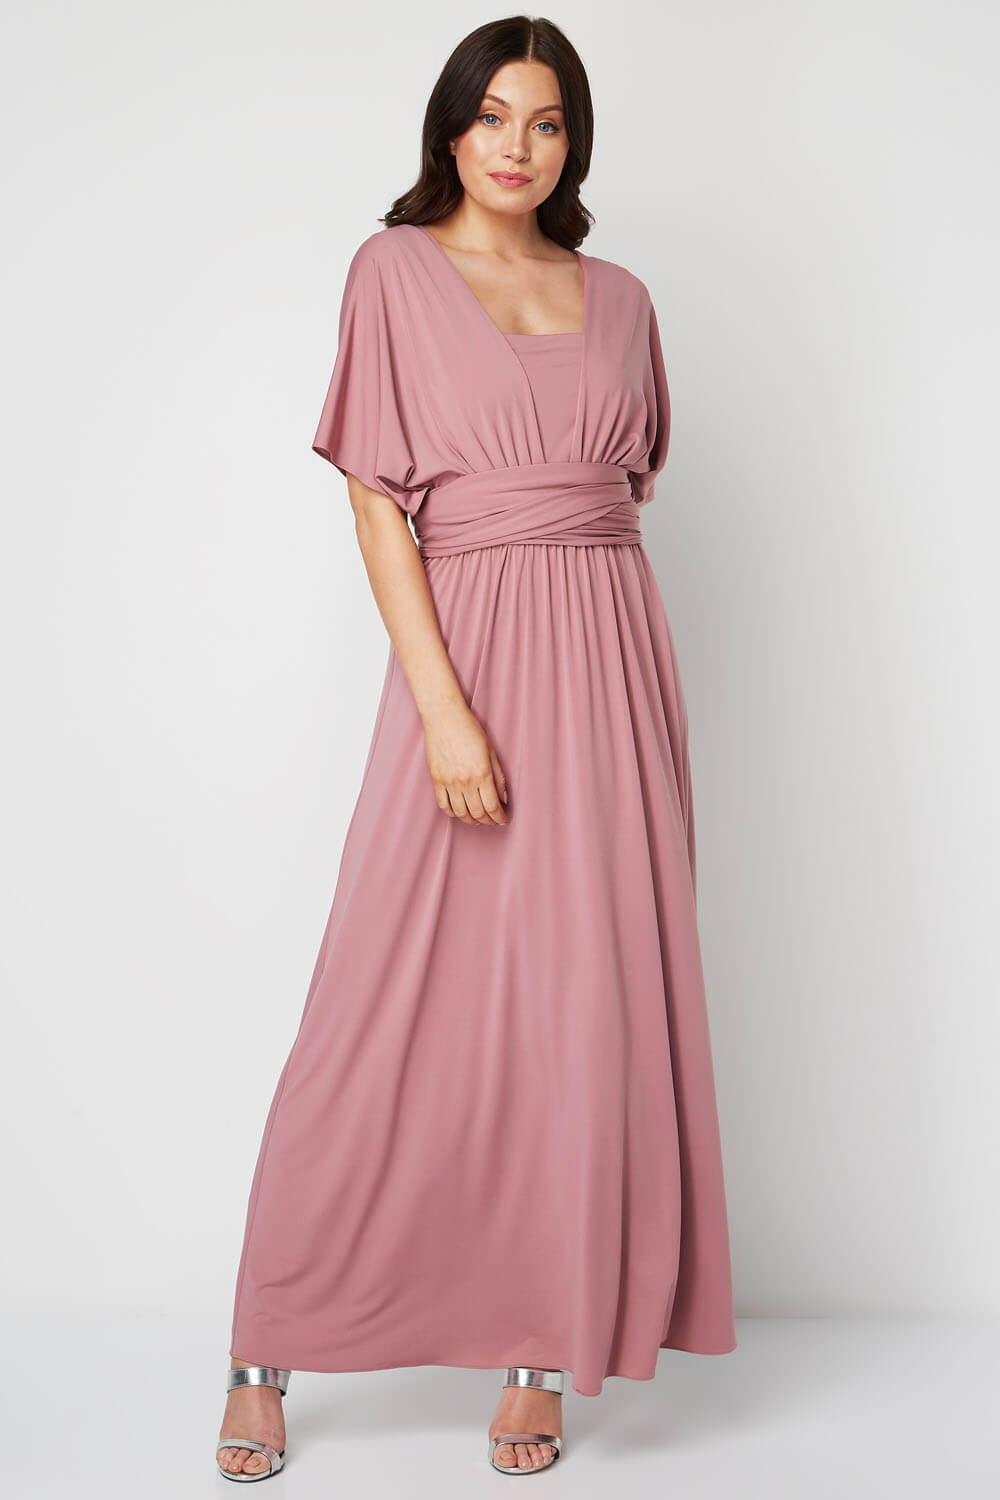 rose multiway dress